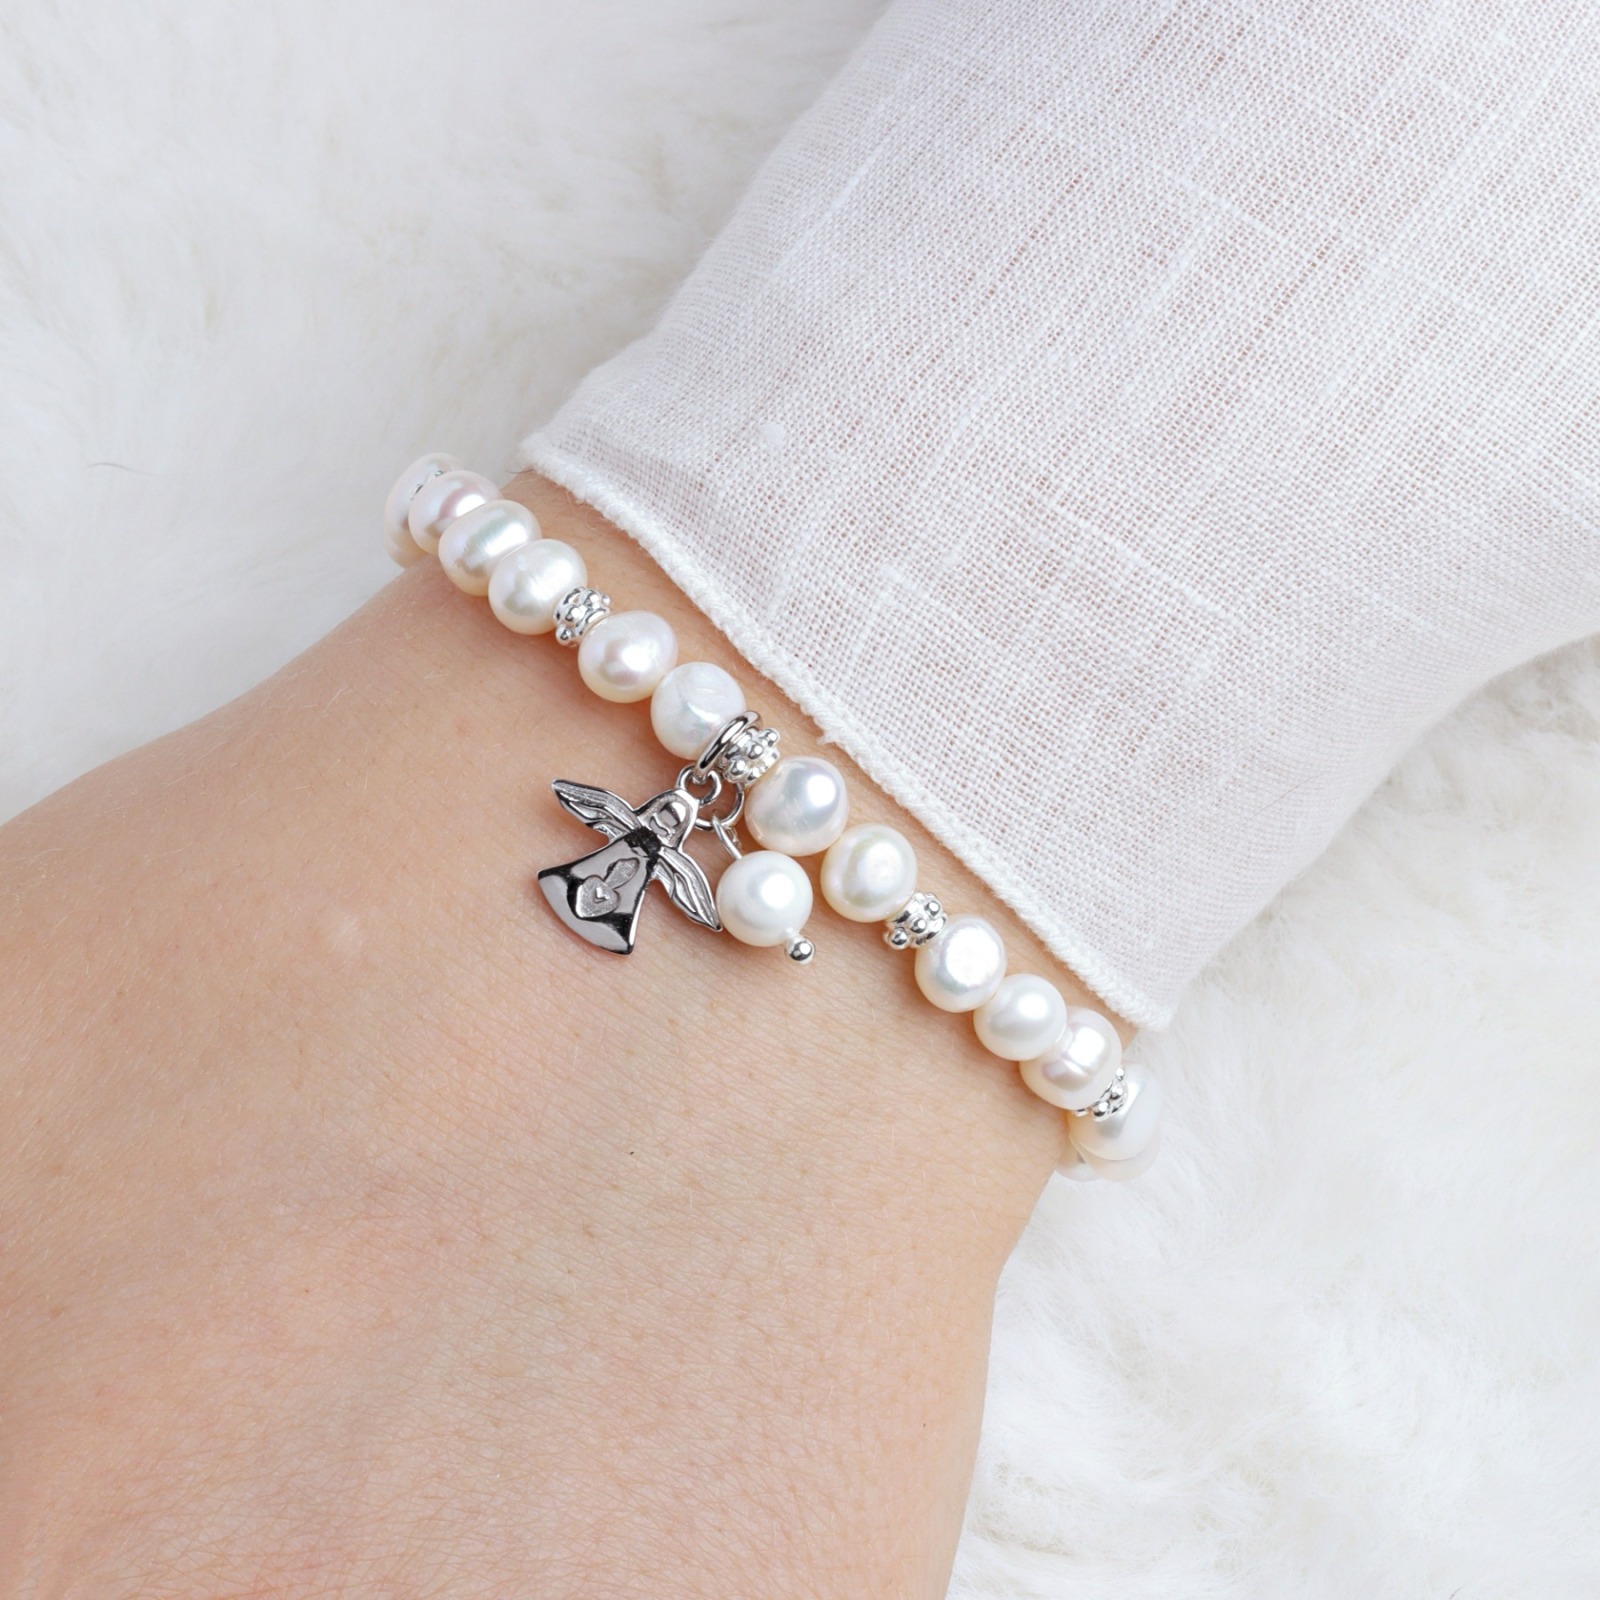 Armband aus echten Perlen mit Schutzengel Silber Geschenk zur Kommunion elastisch 2